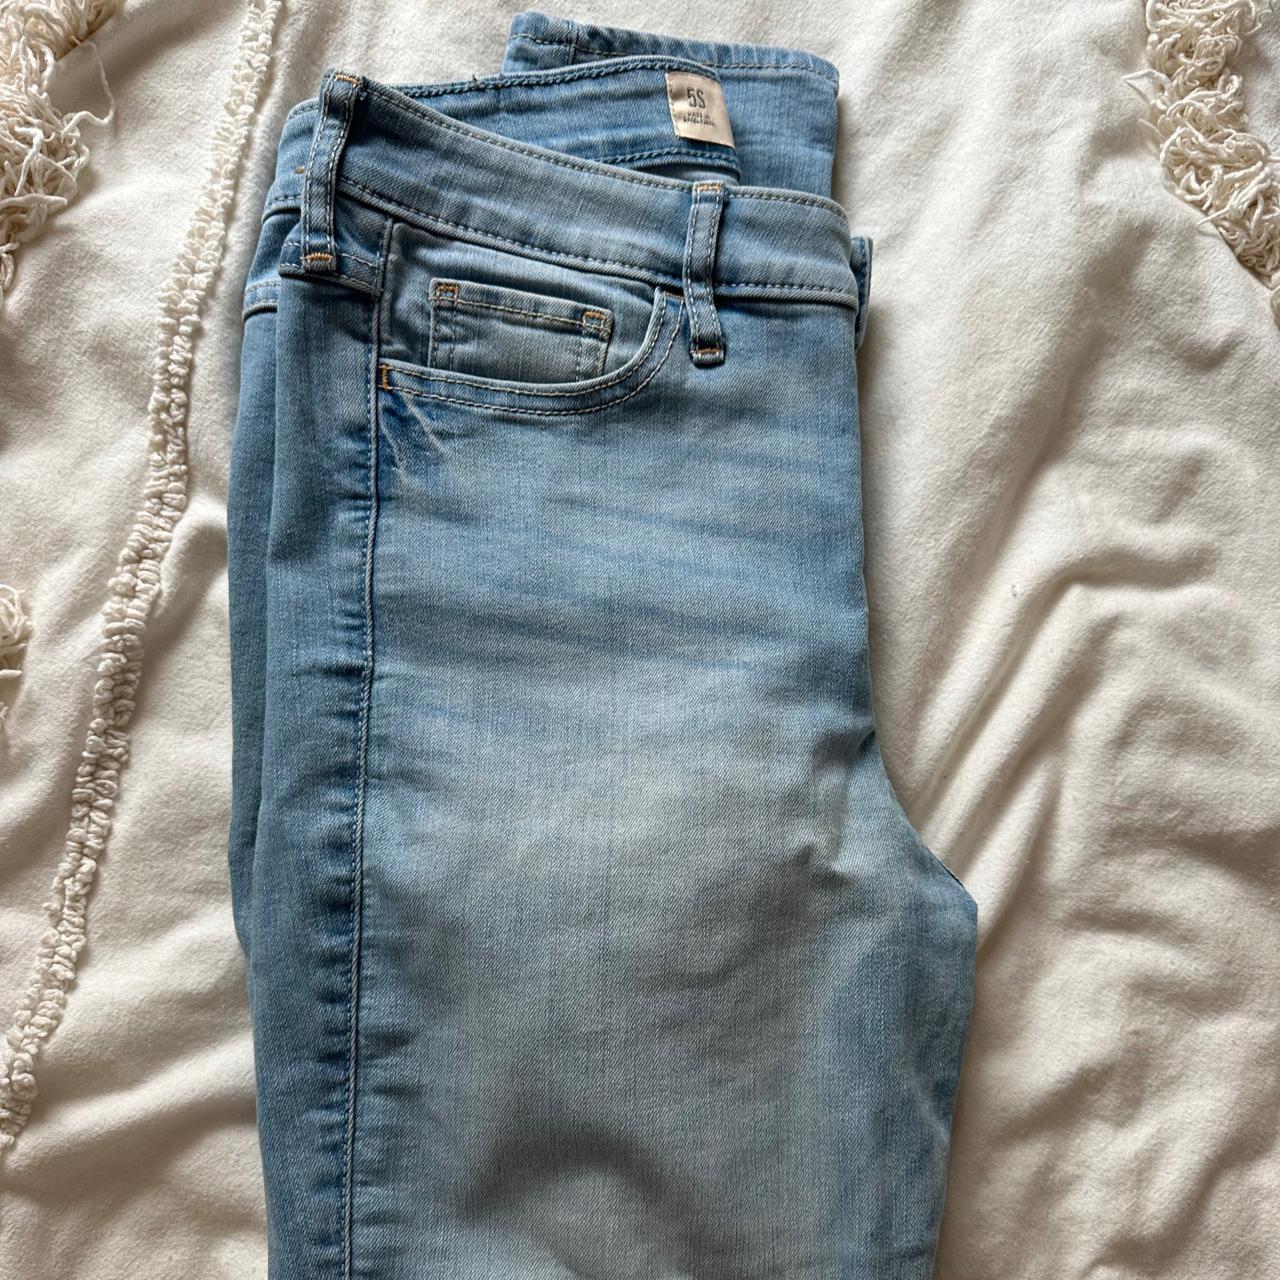 Light wash bluejeans. Hollister jeans skinny regular